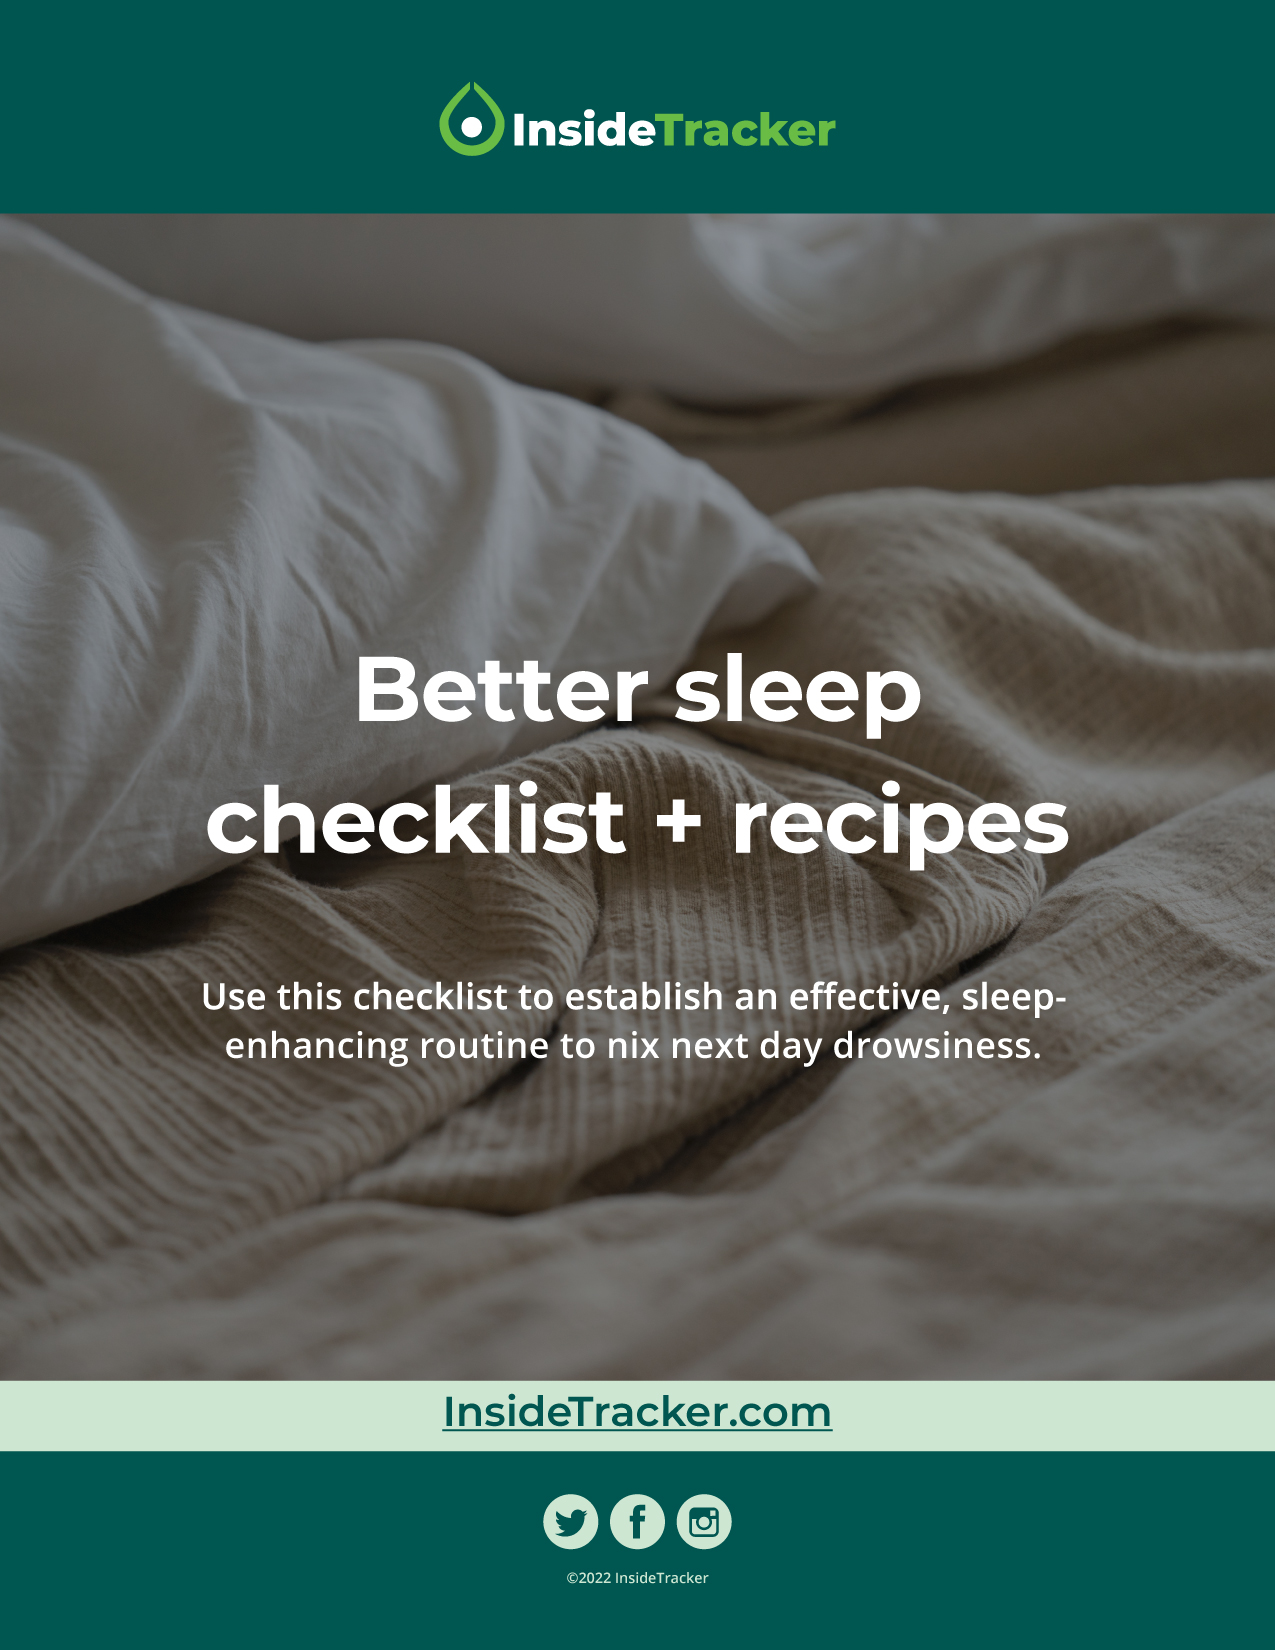 Better Sleep Checklist Update 06.22-01